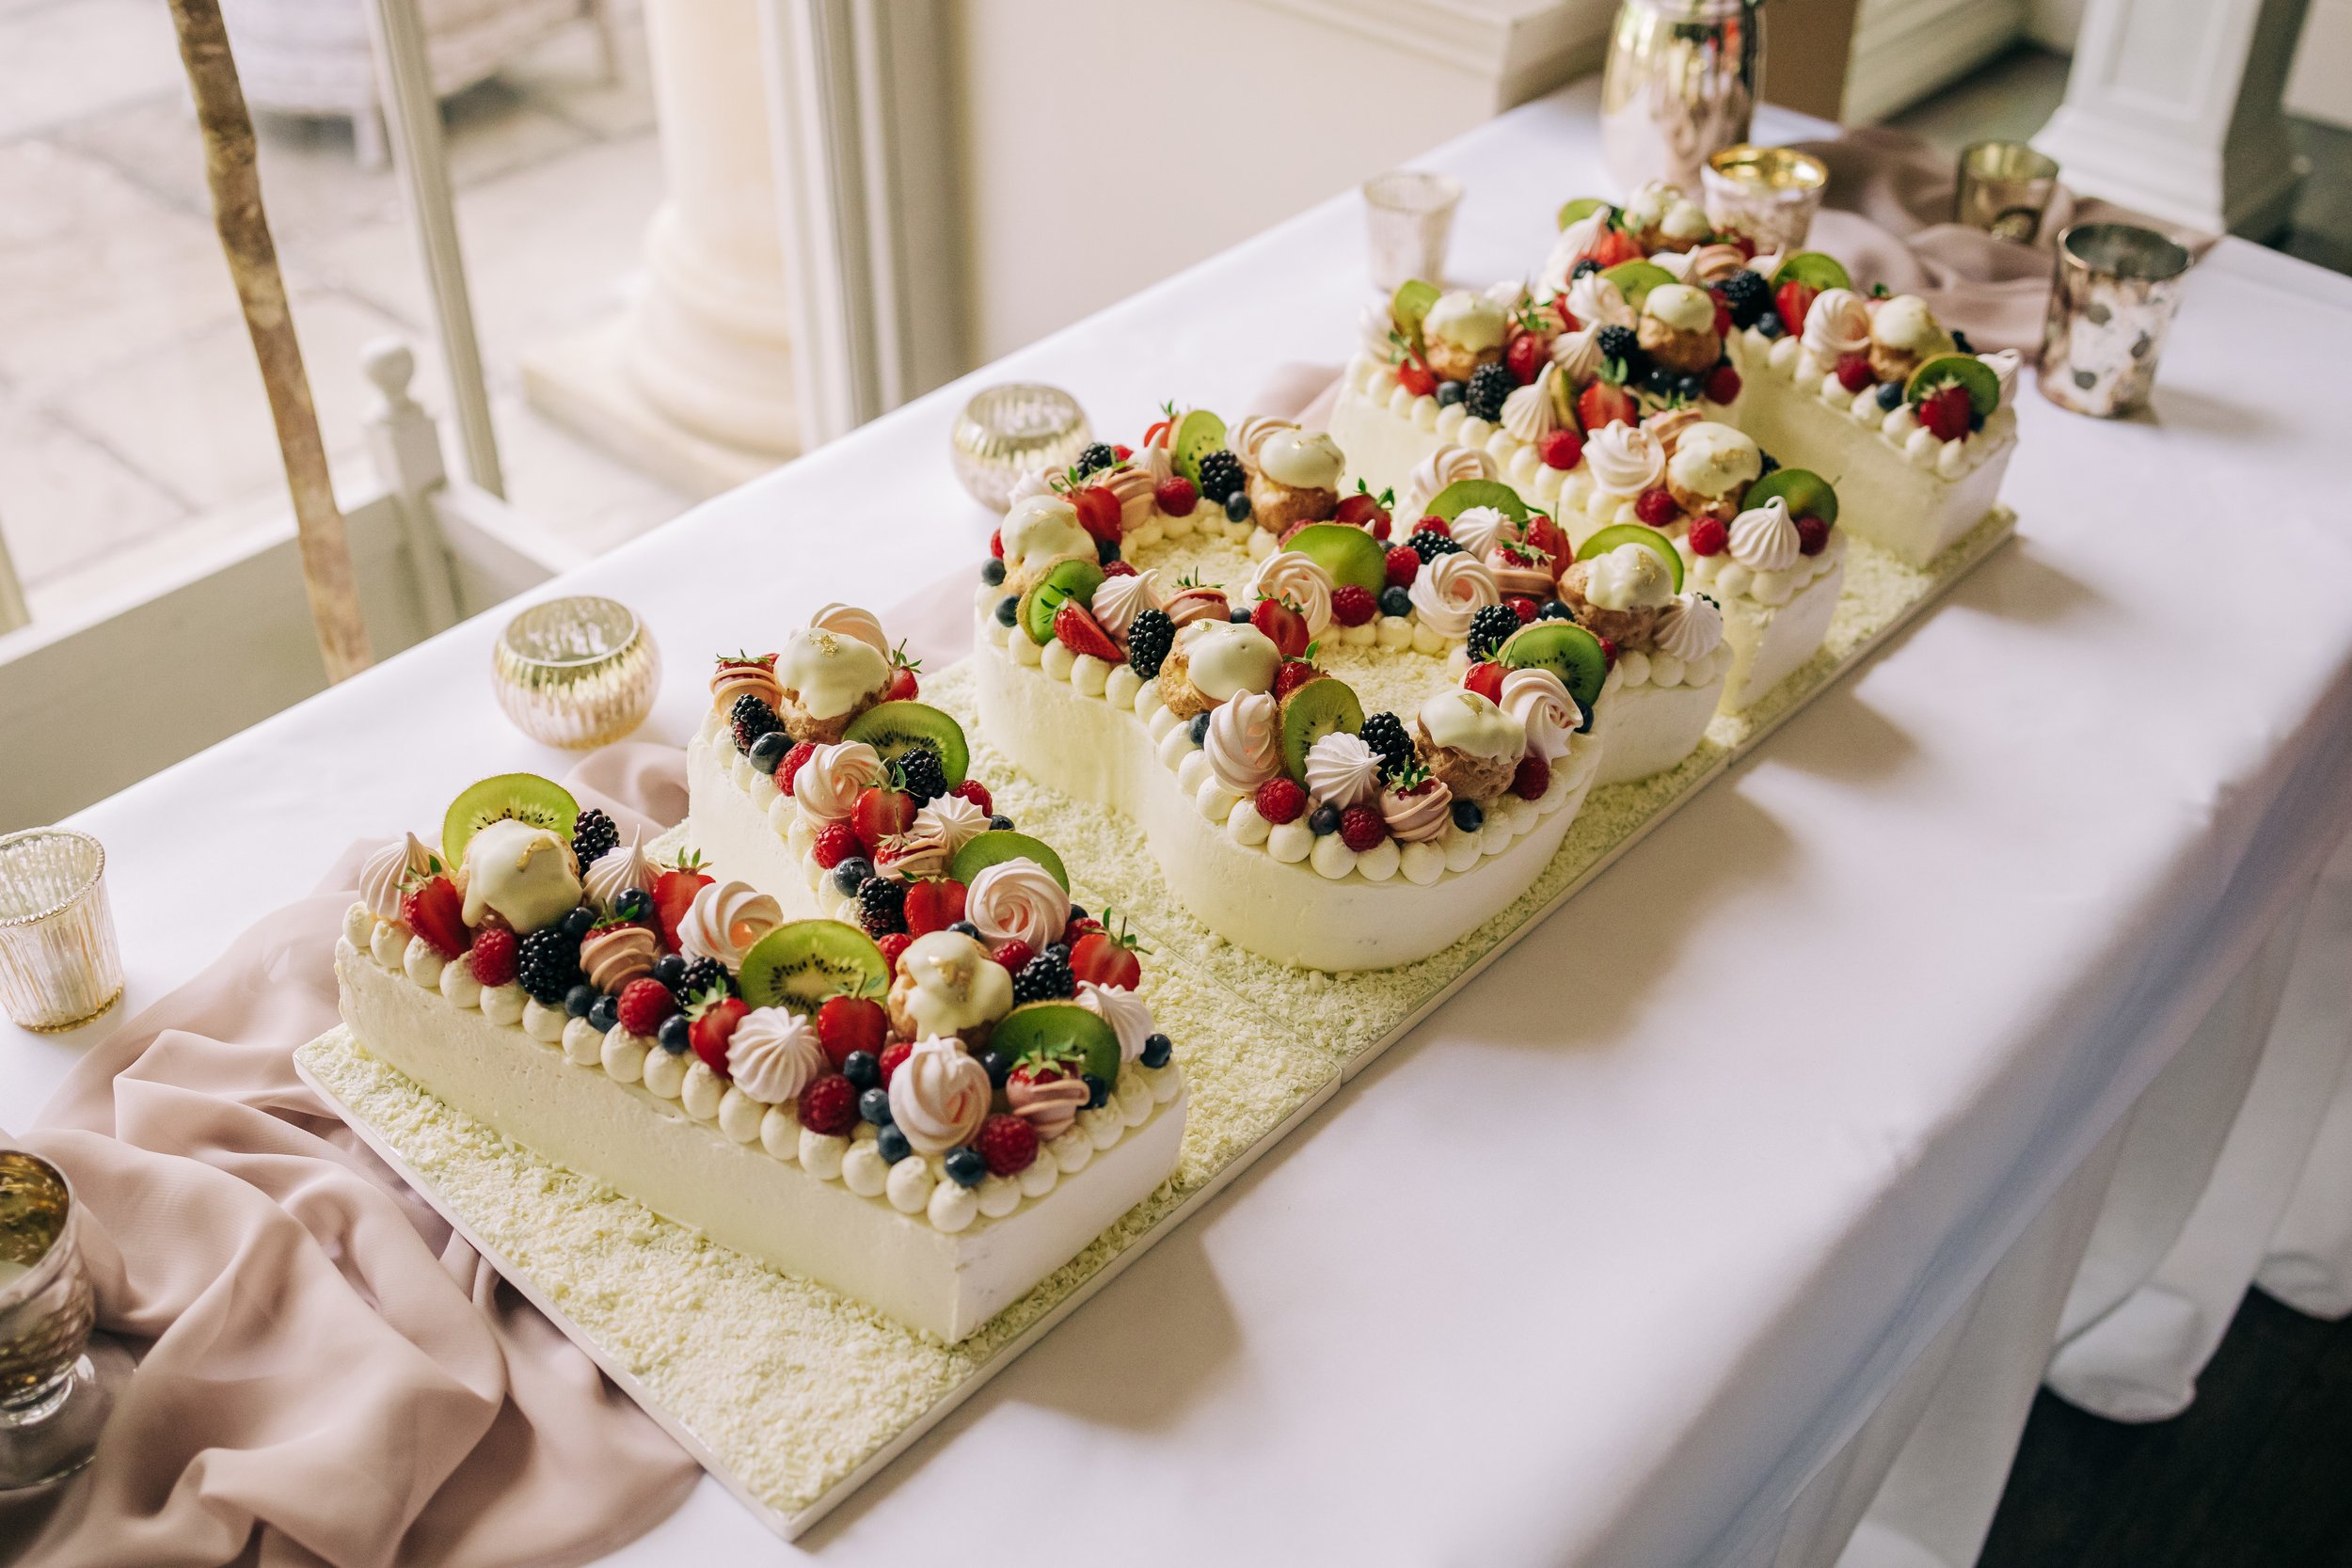 Nottingham wedding cakes